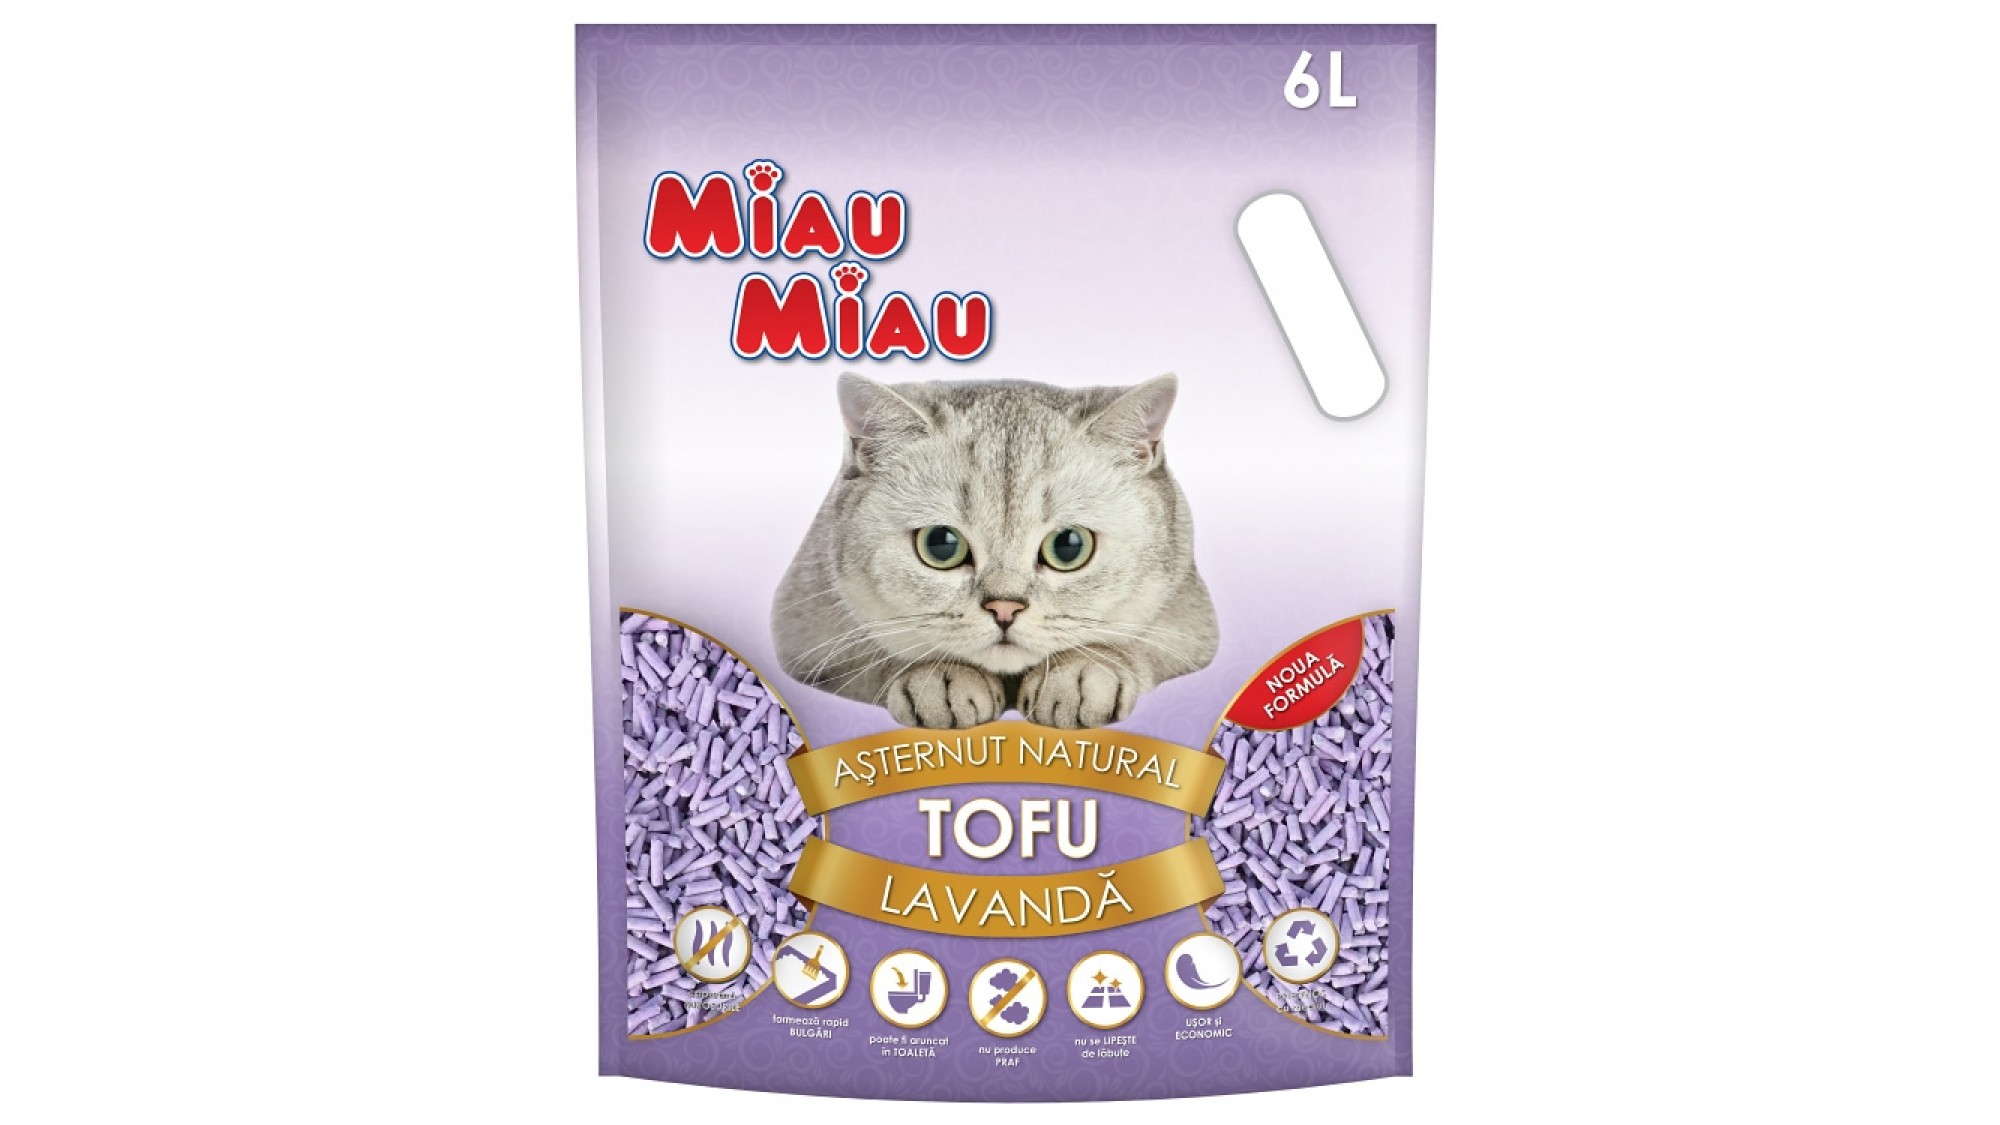 Asternut Natural Din Tofu Pentru Pisici Miau Miau cu lavanda 6 L Miau Miau